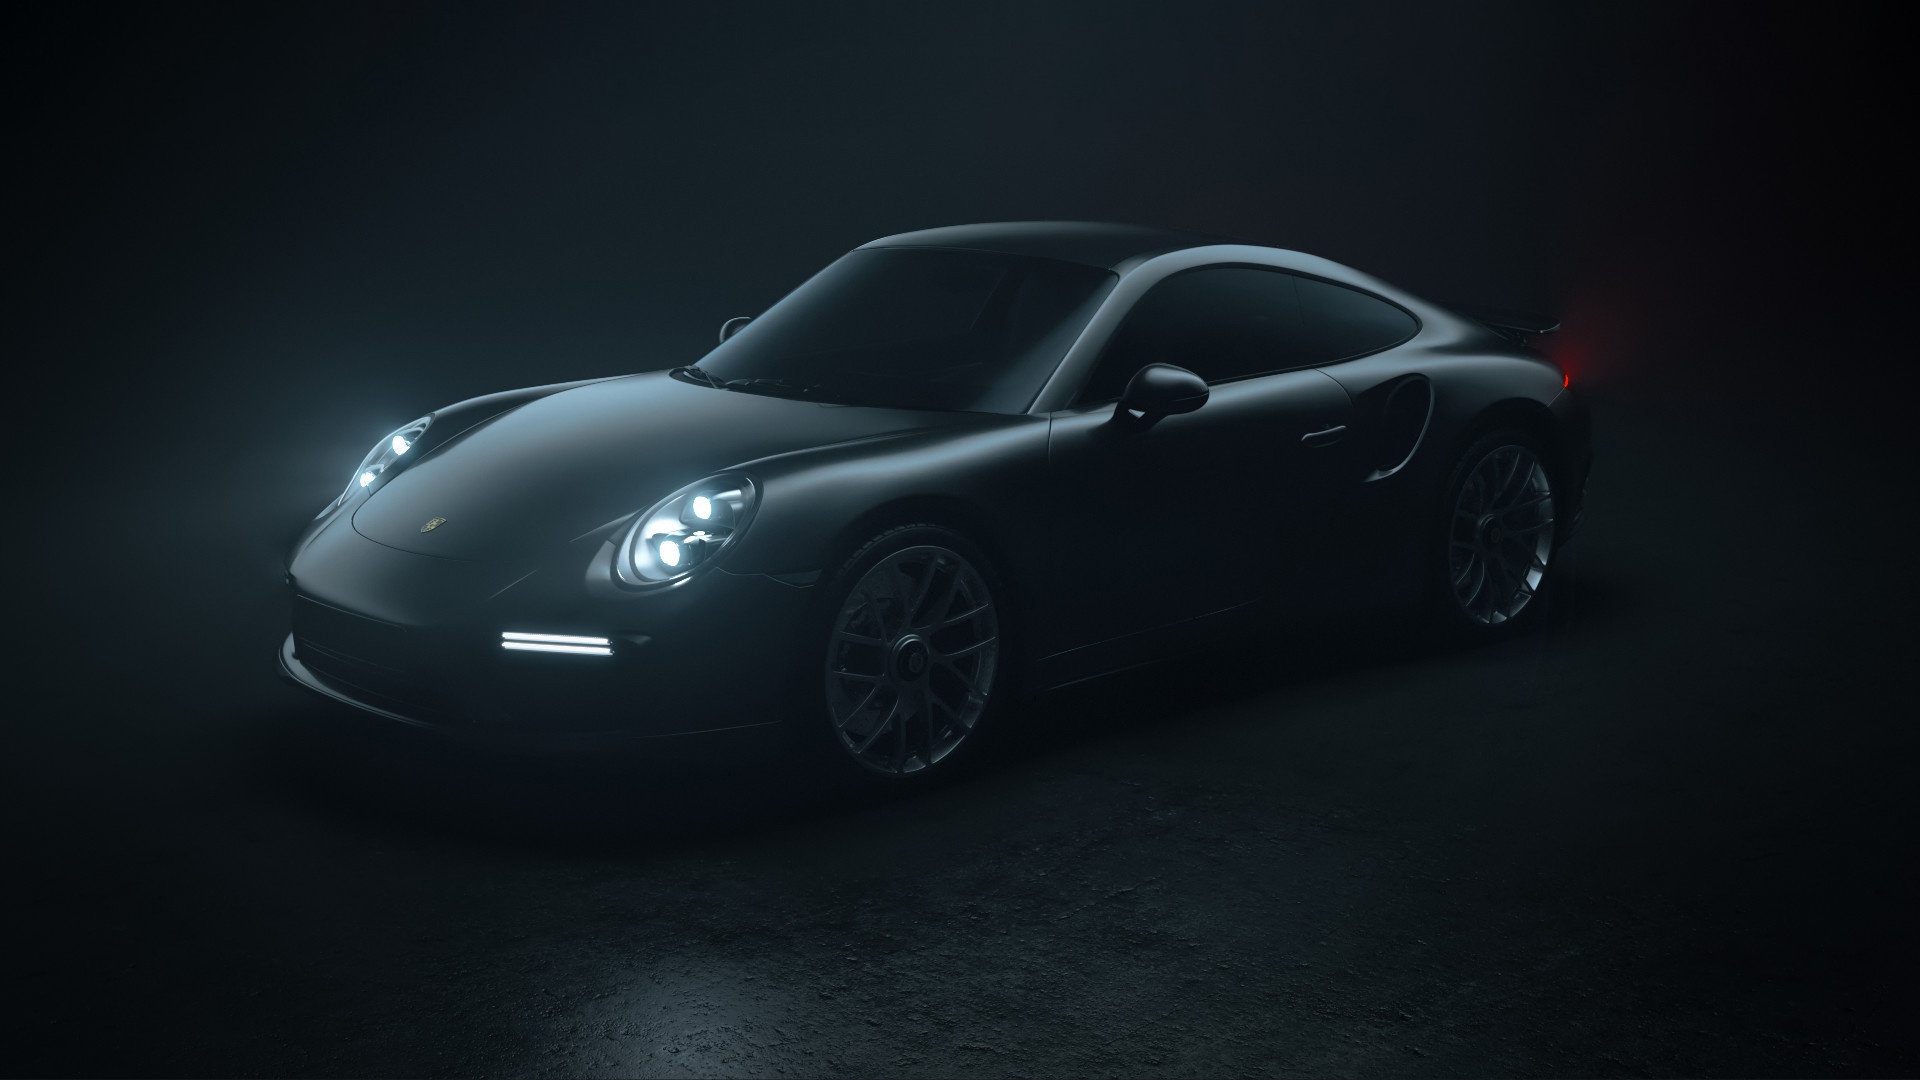 Download mobile wallpaper Porsche, Car, Porsche 911, Vehicles, Porsche 911 Turbo for free.